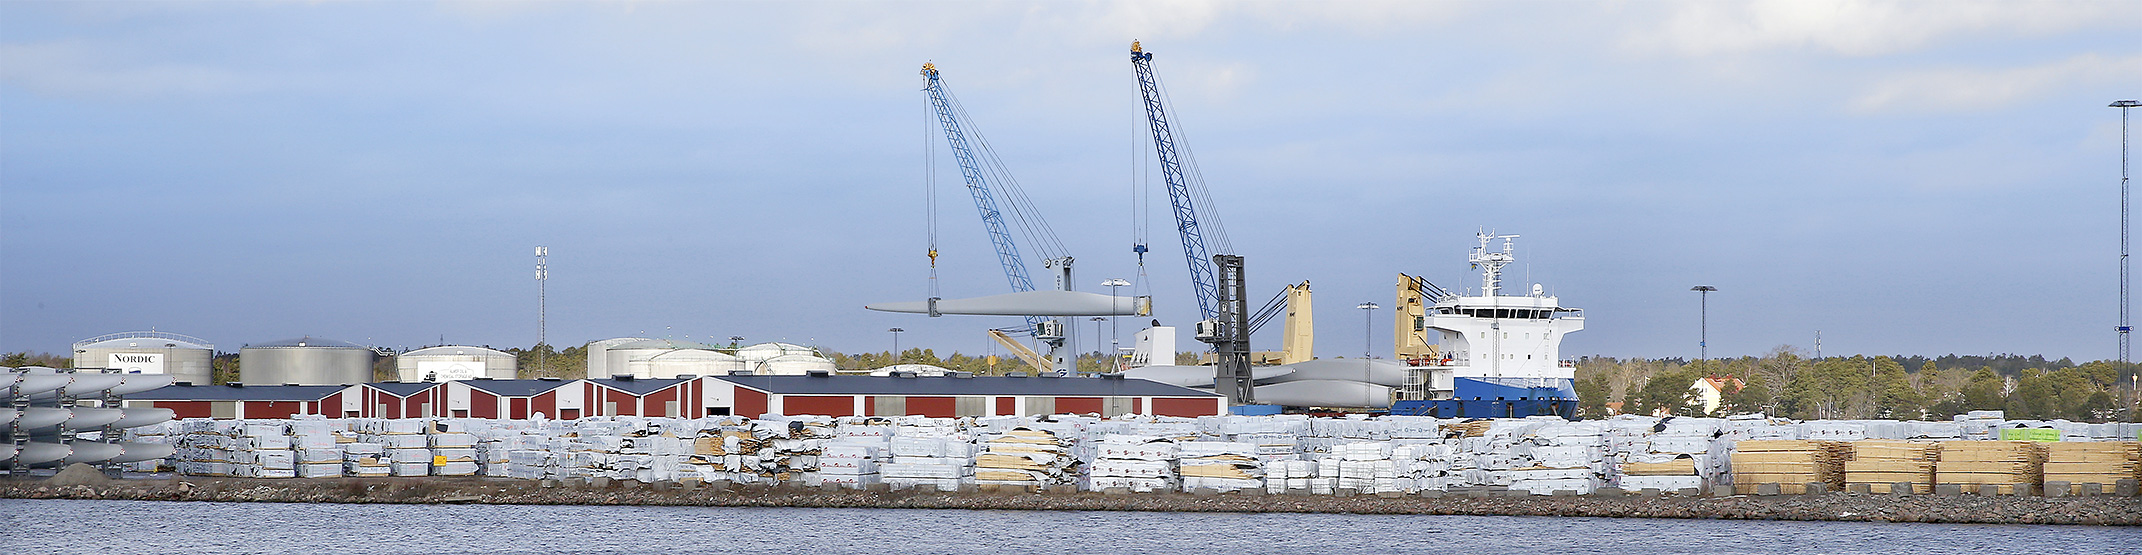 Avlastning av vindkraftverk i Oskarshamns hamn